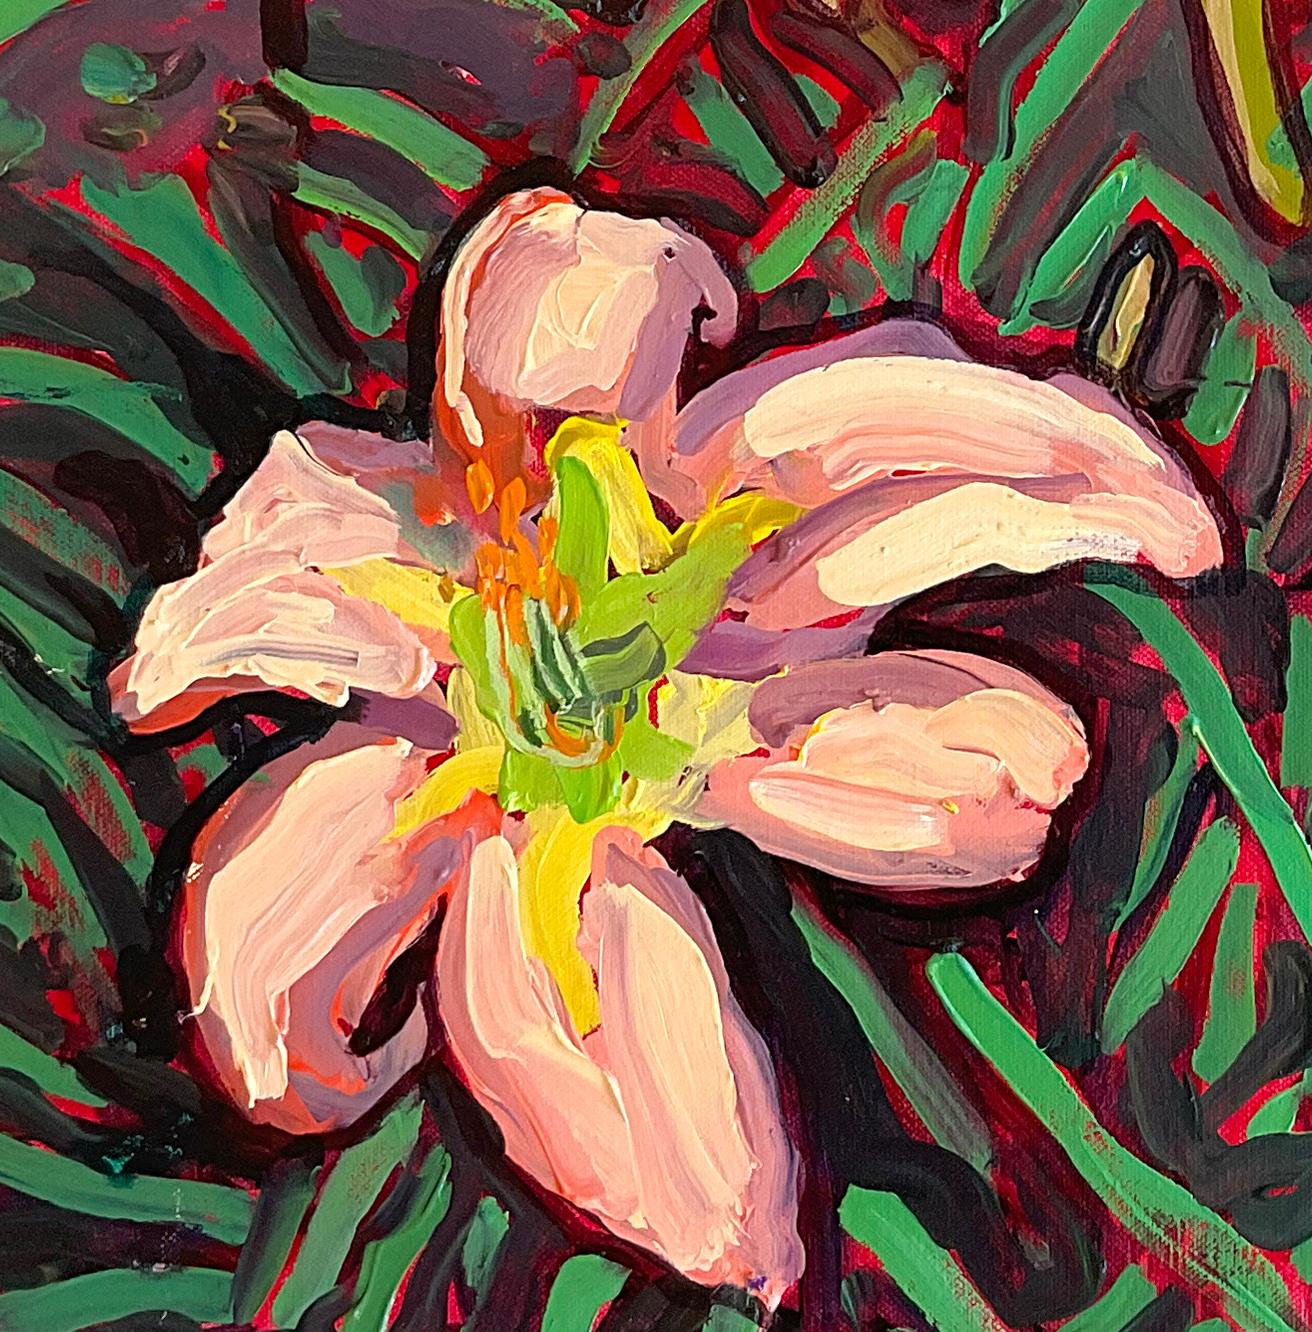 Pfirsichfarbene Lilien (Zeitgenössisches Stillleben mit lebhaften Tigerlilien, Öl auf Leinwand)  – Painting von Dan Rupe